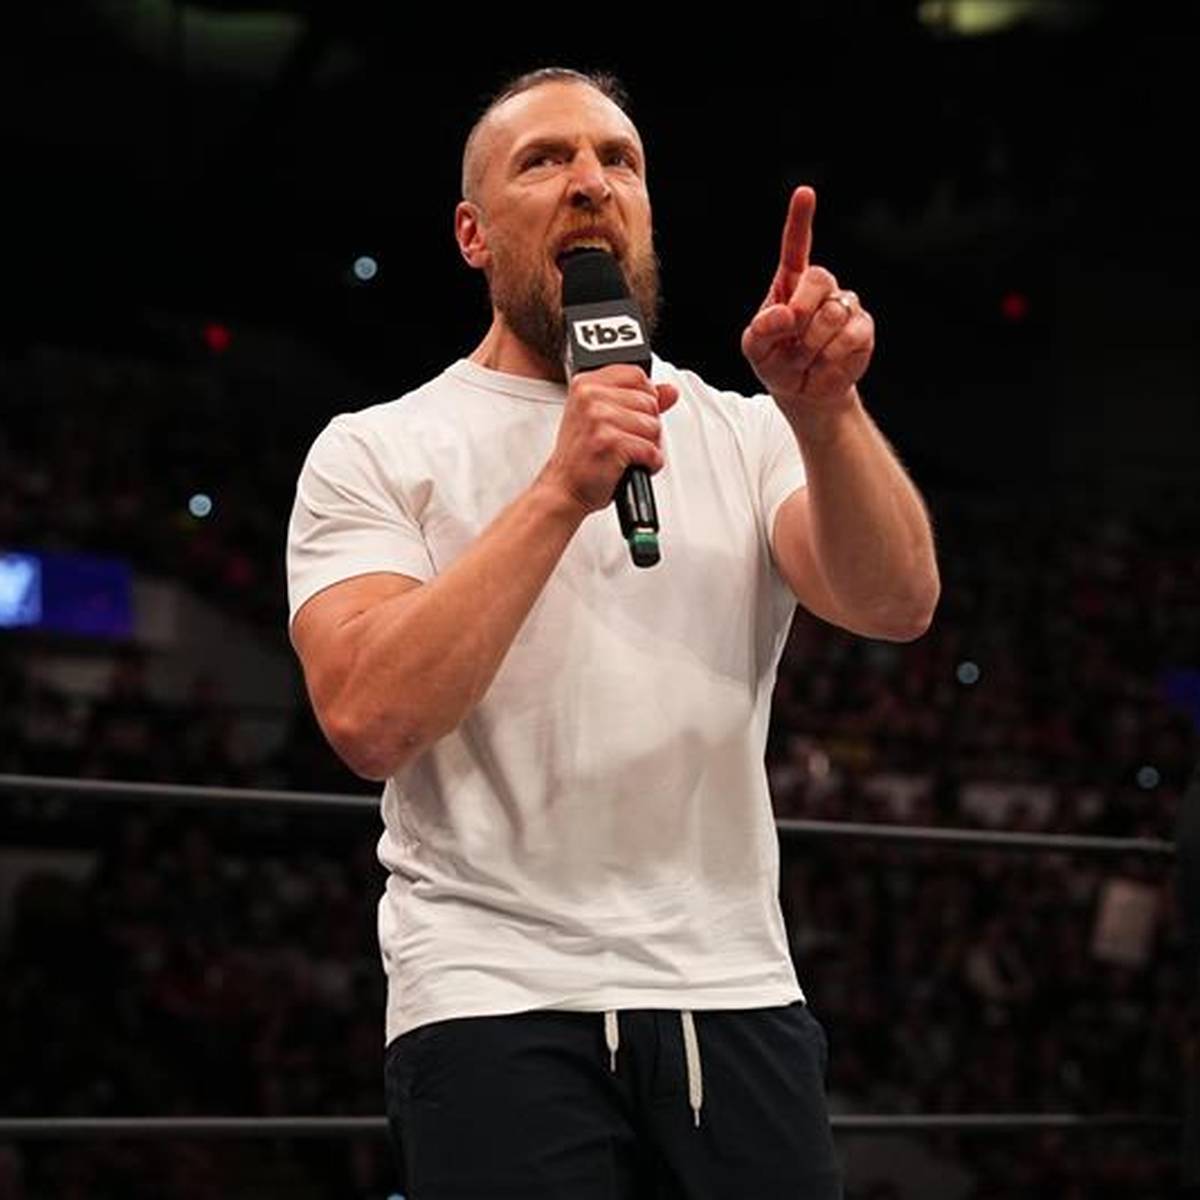 Der verletzte Bryan Danielson kündigt an, dass er bei den nächsten Großevents von AEW würdig vertreten wird - ein deutschsprachiger Ex-WWE-Kollege wird heiß gehandelt.